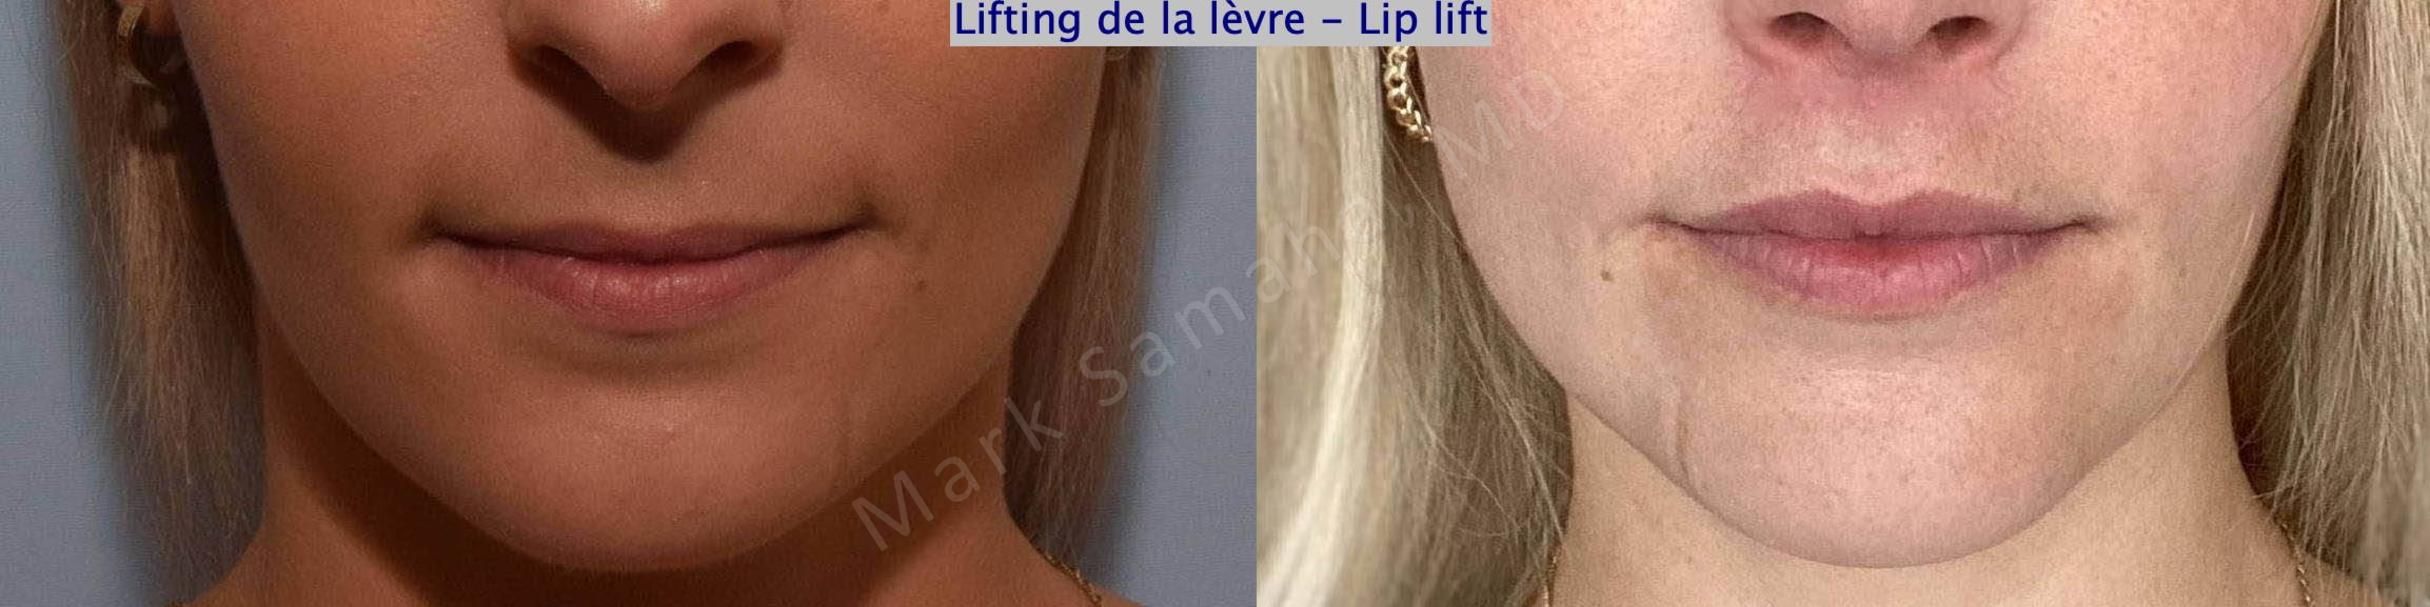 Before & After Lip Lift / Lifting de la lèvre supérieure Case 177 Front View in Mount Royal, QC